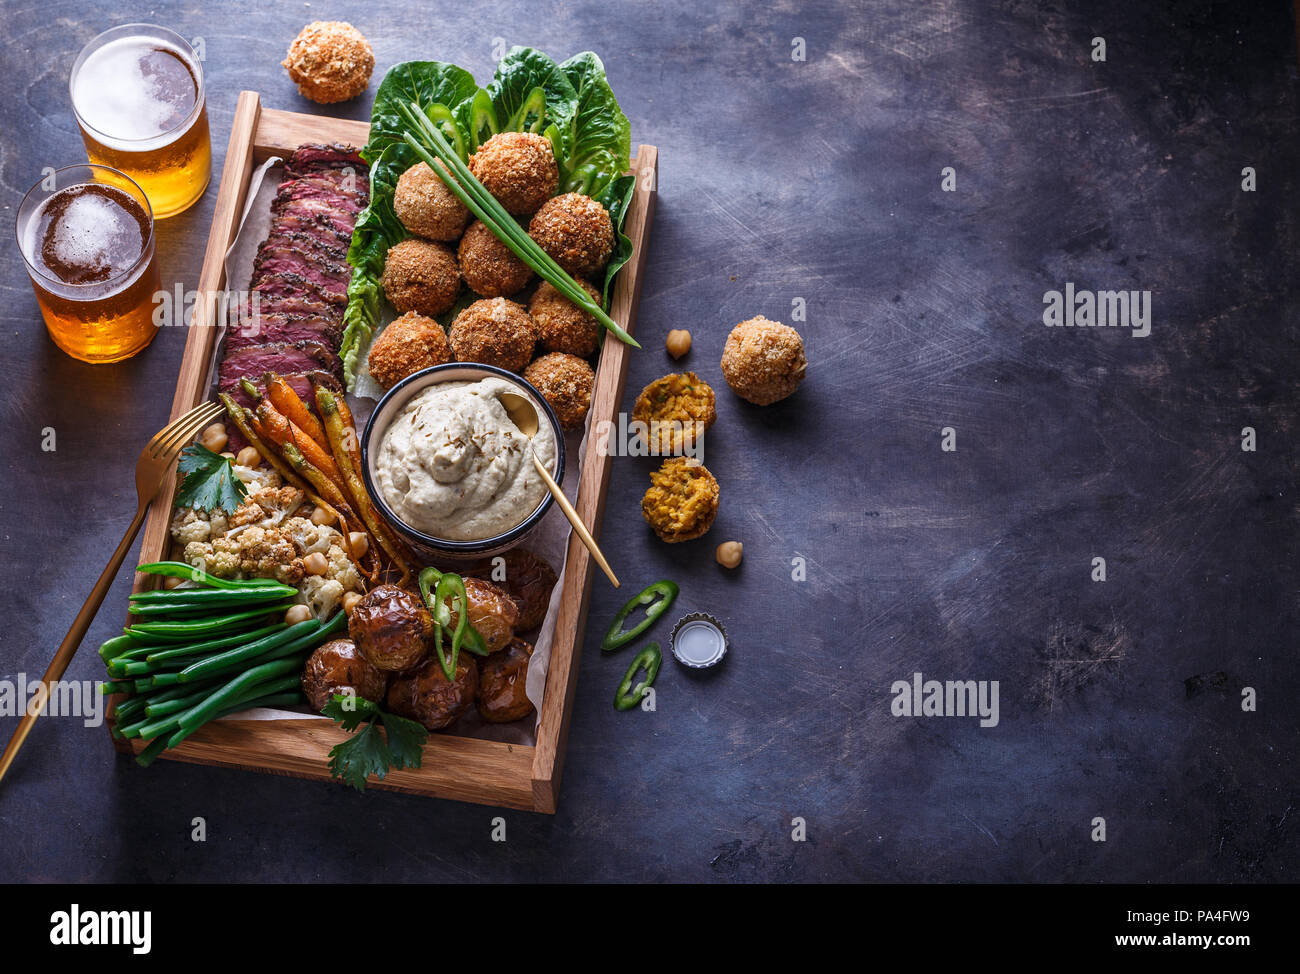 Le pastrami, falafel, babagahanoush, légumes et la bière dans une boîte en bois, copyspace Banque D'Images